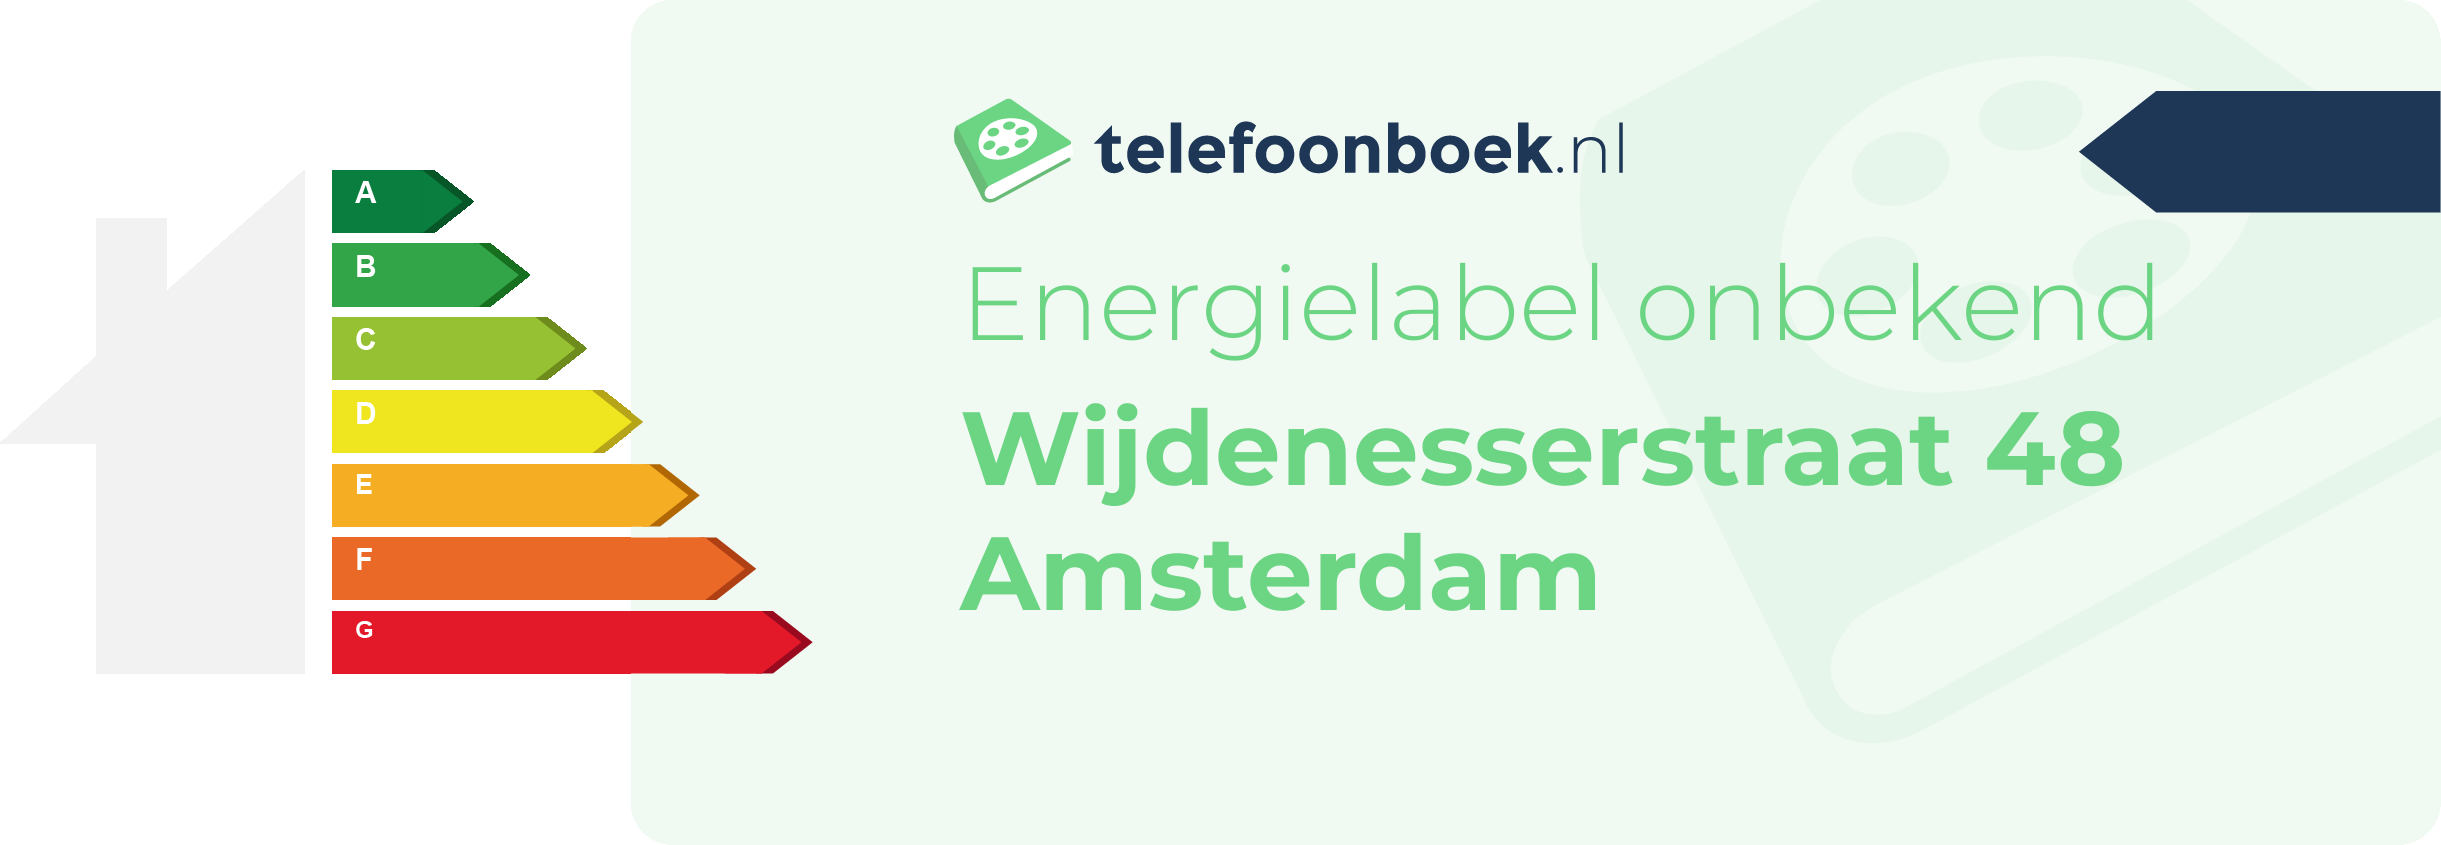 Energielabel Wijdenesserstraat 48 Amsterdam